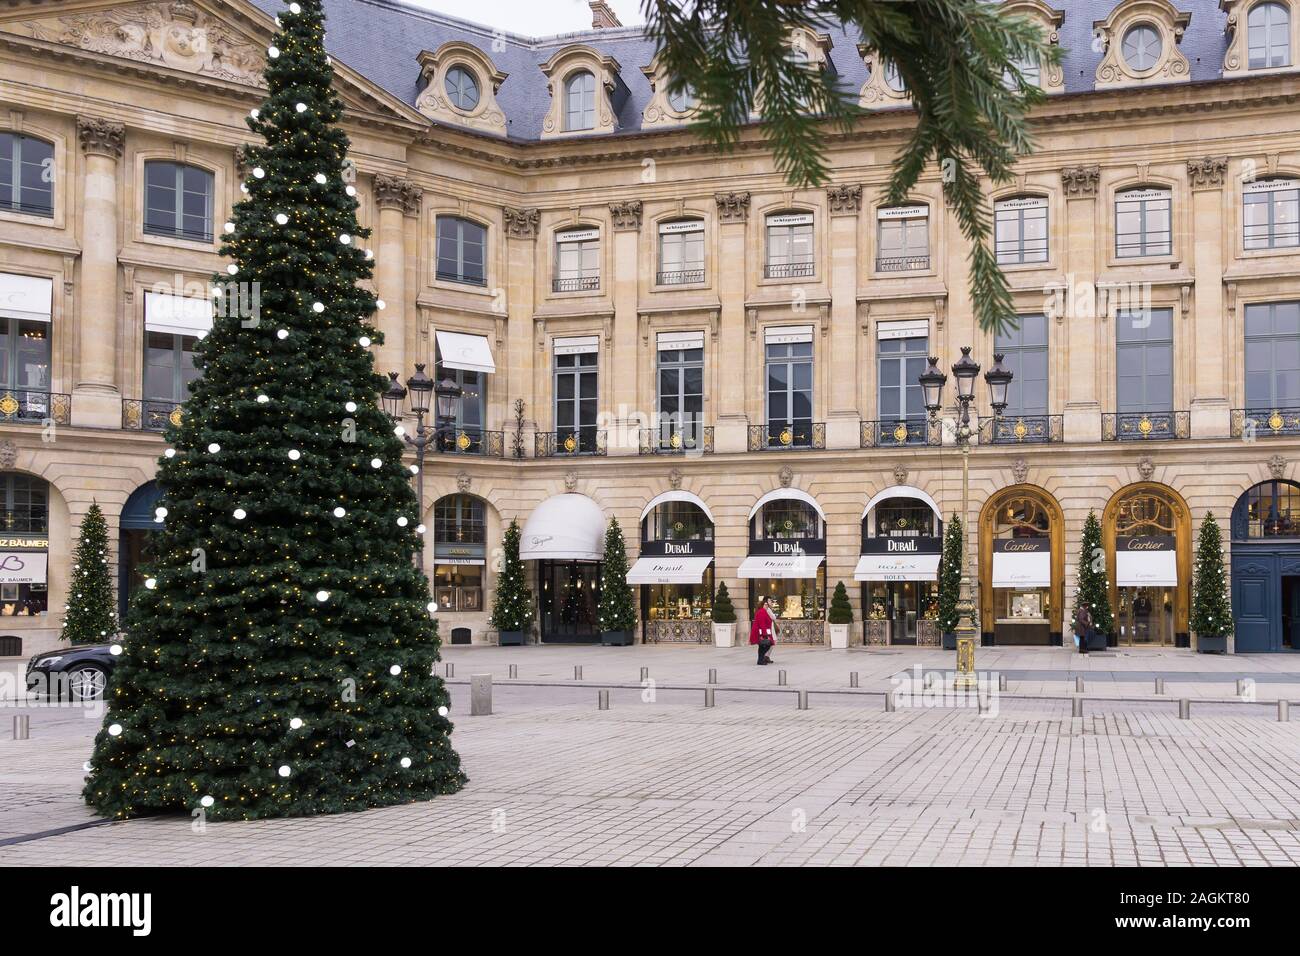 Paris - Noël arbre de Noël décoré dans un Place Vendôme dans le 1er arrondissement de Paris, France, Europe. Banque D'Images